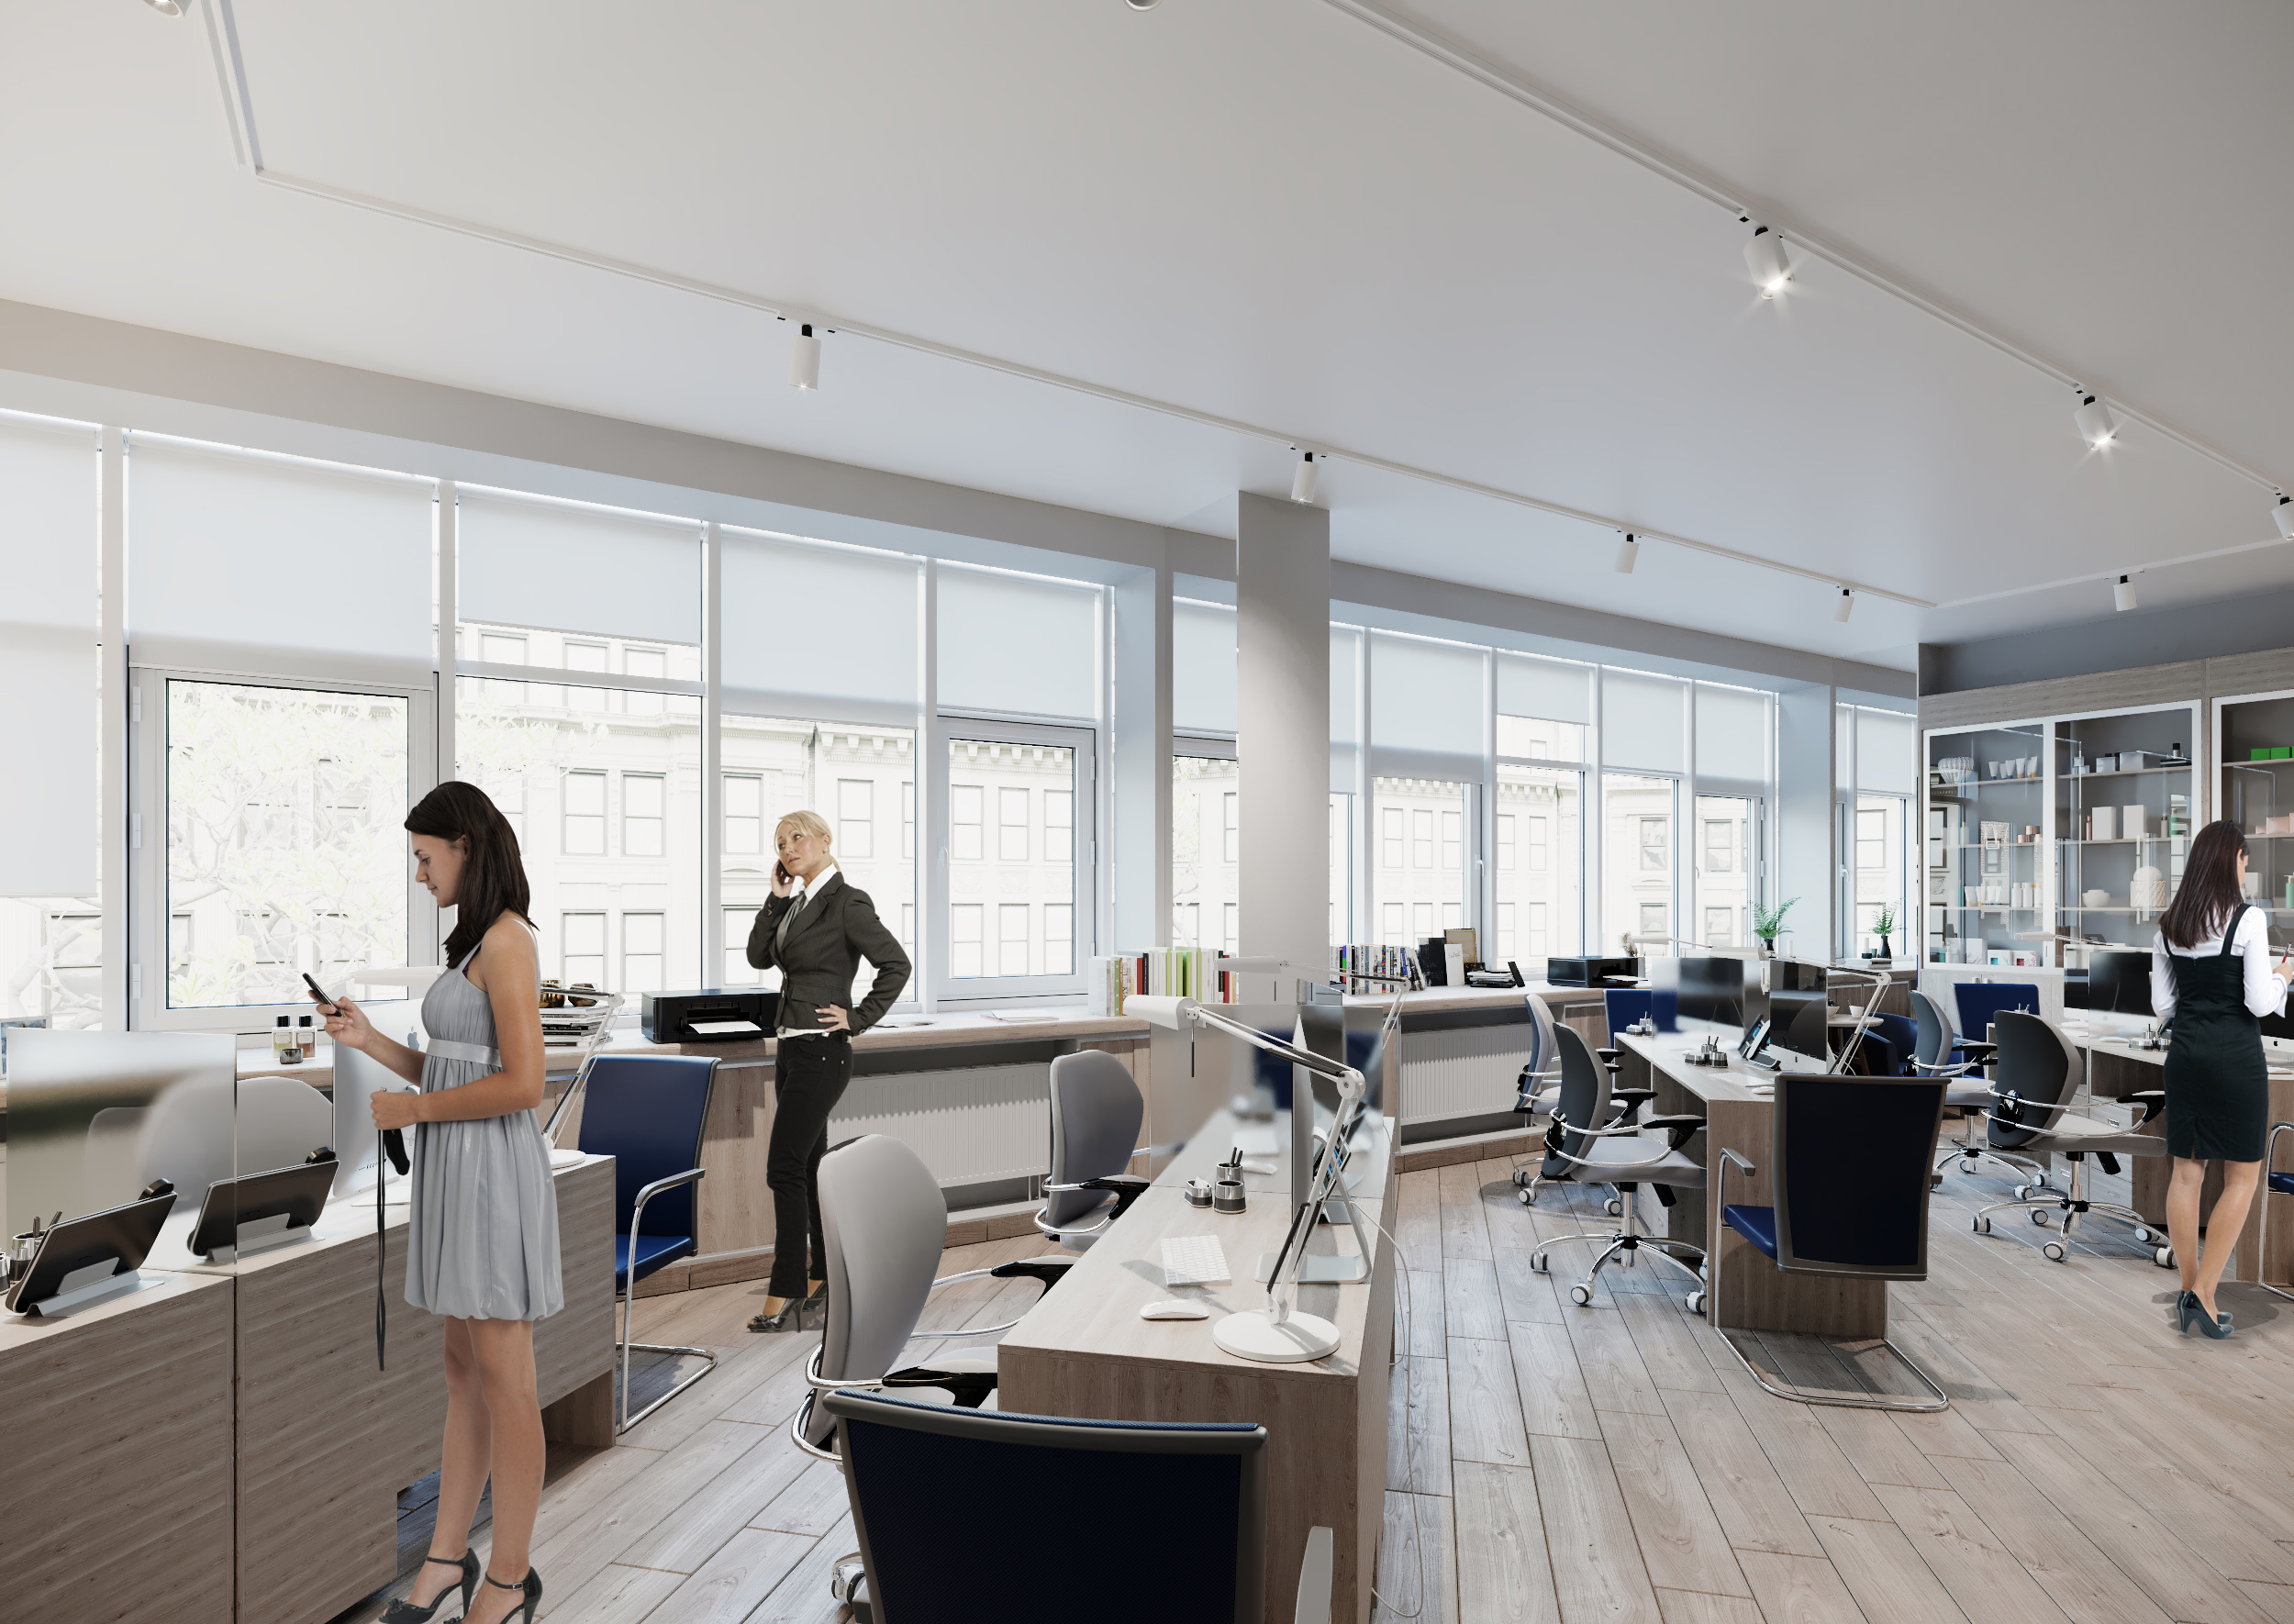 Ufficio moderno 3D Archvis in 3d max corona render immagine